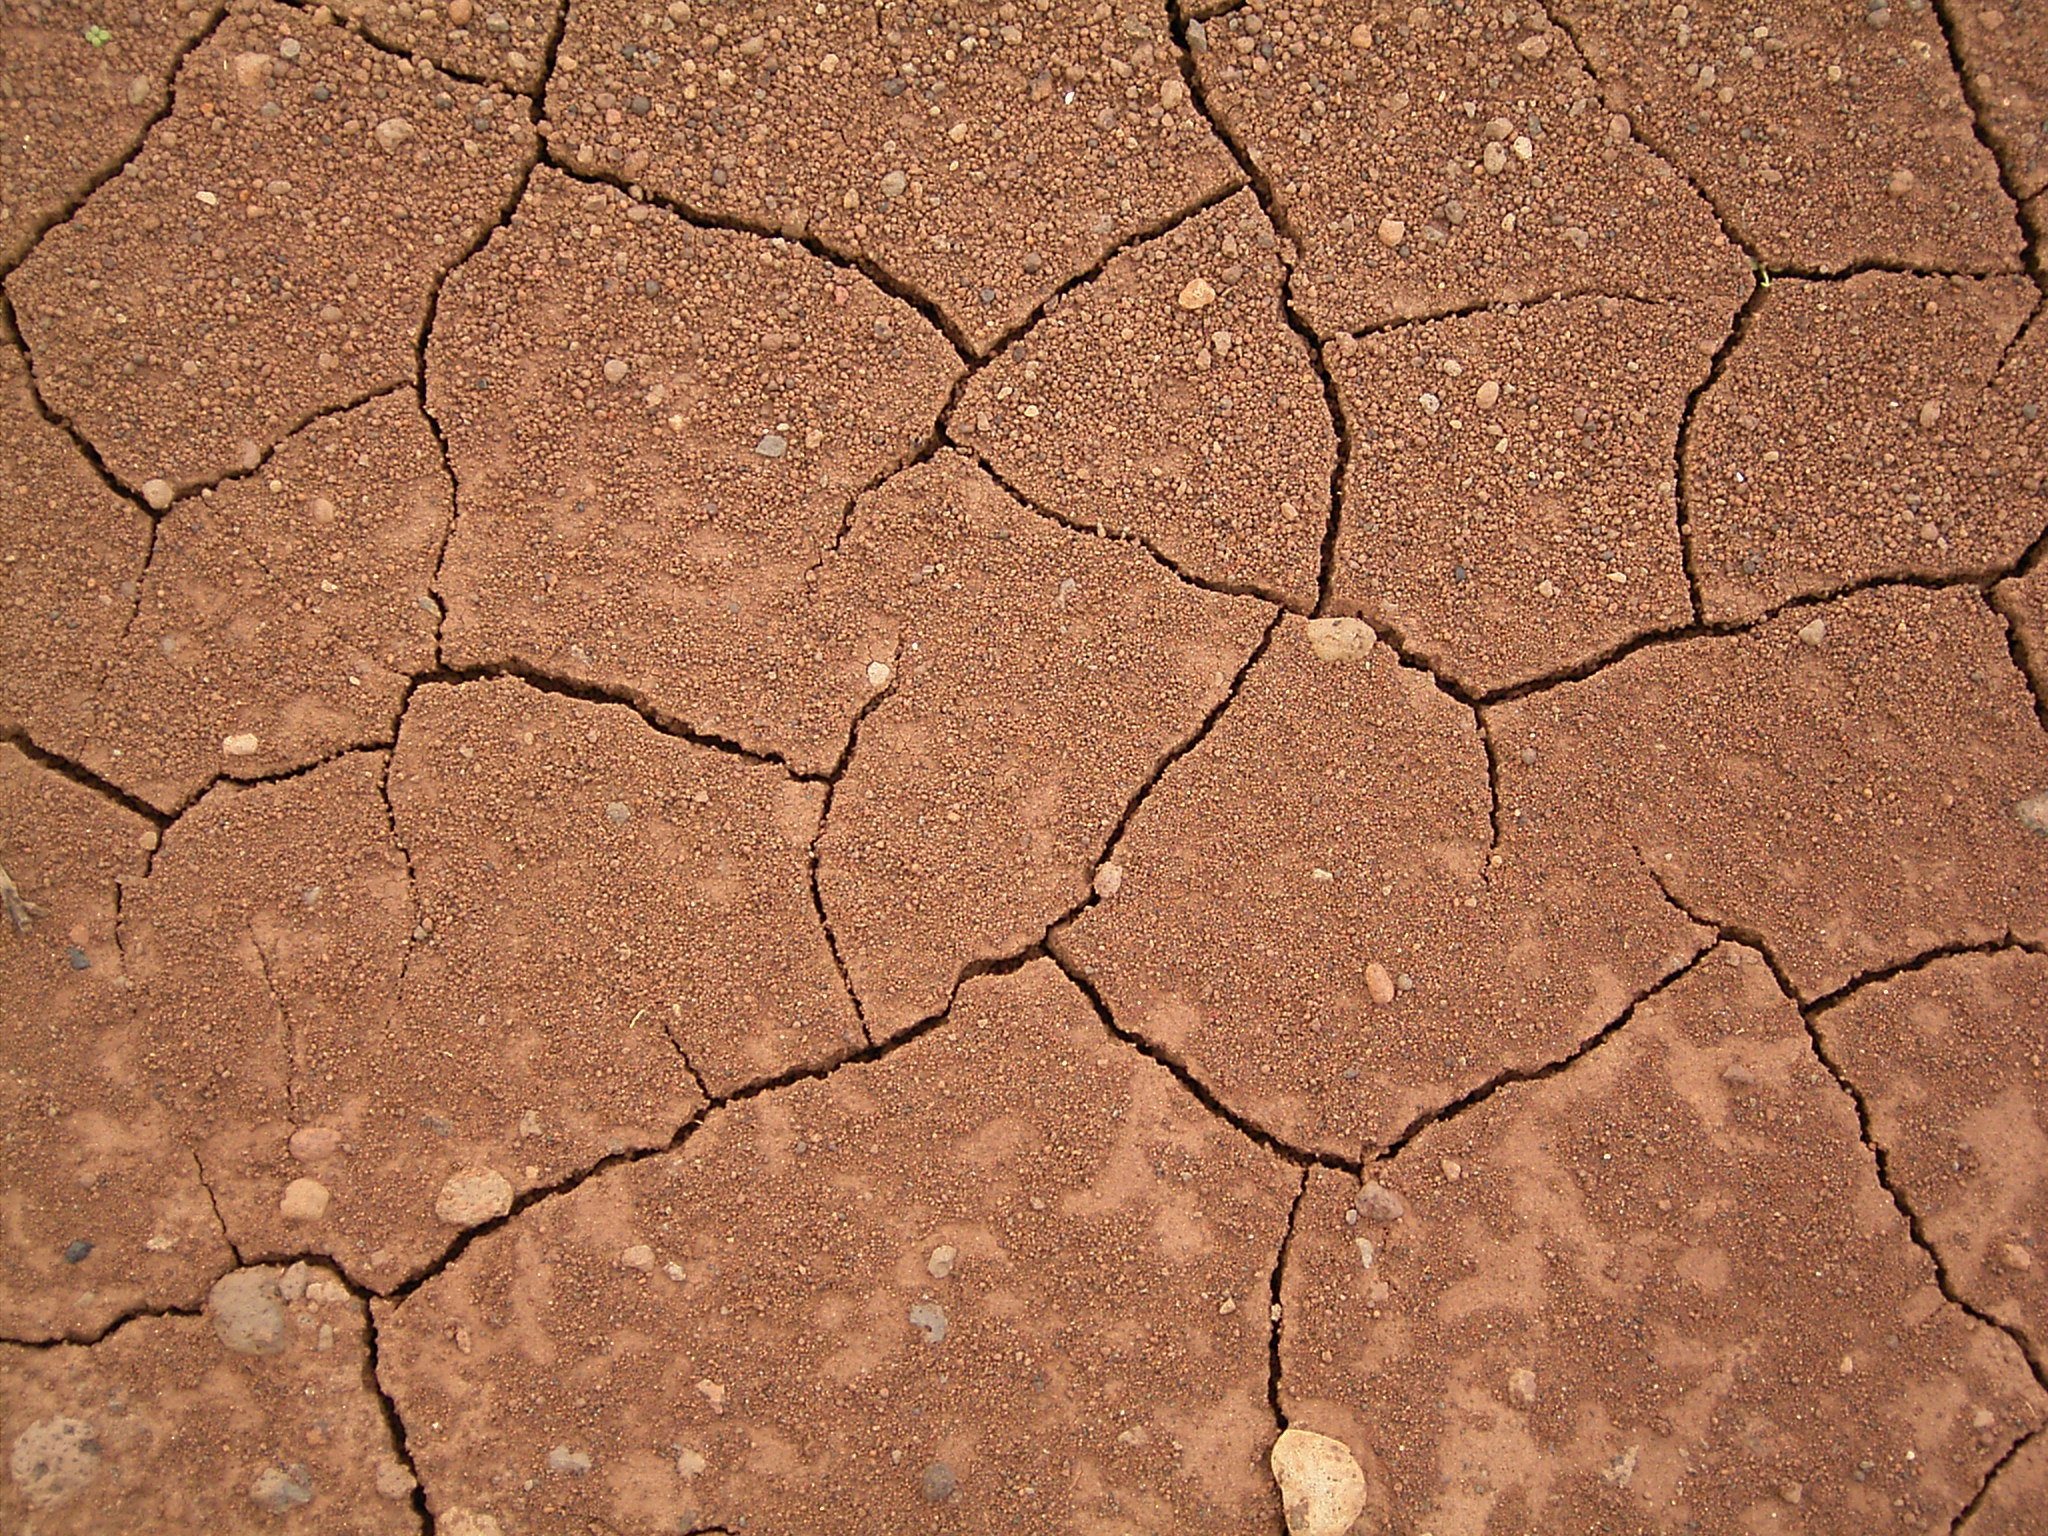 File:Dried mud (La Fajana) 02 ies.jpg - Wikimedia Commons